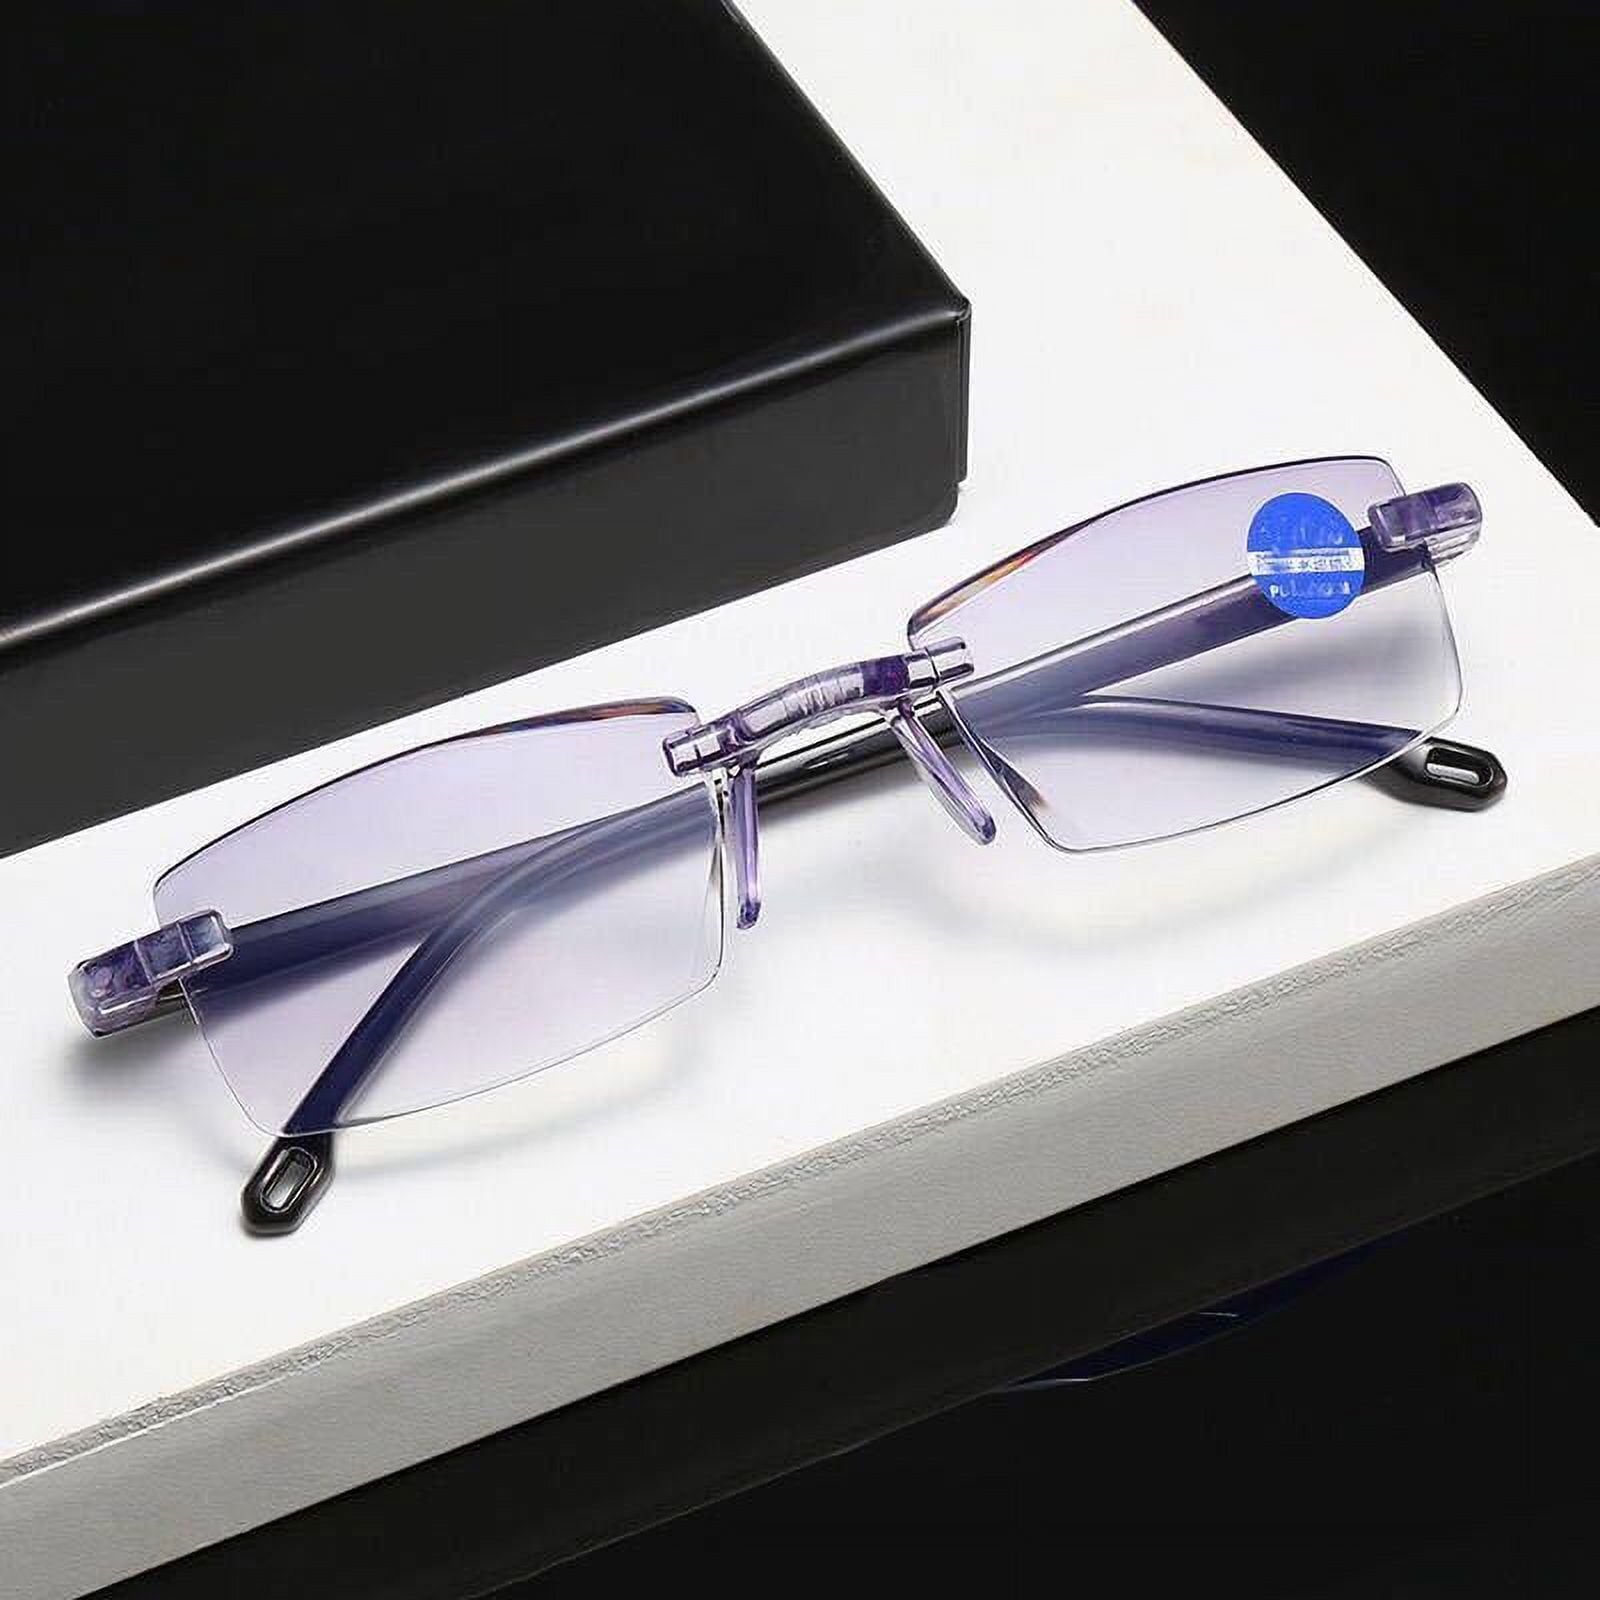  hunsquer Blue Light Blocking Glasses - Women/Men 3Pack Computer  Reading Gaming Anti Eyestrain Blue Light Glasses : Health & Household